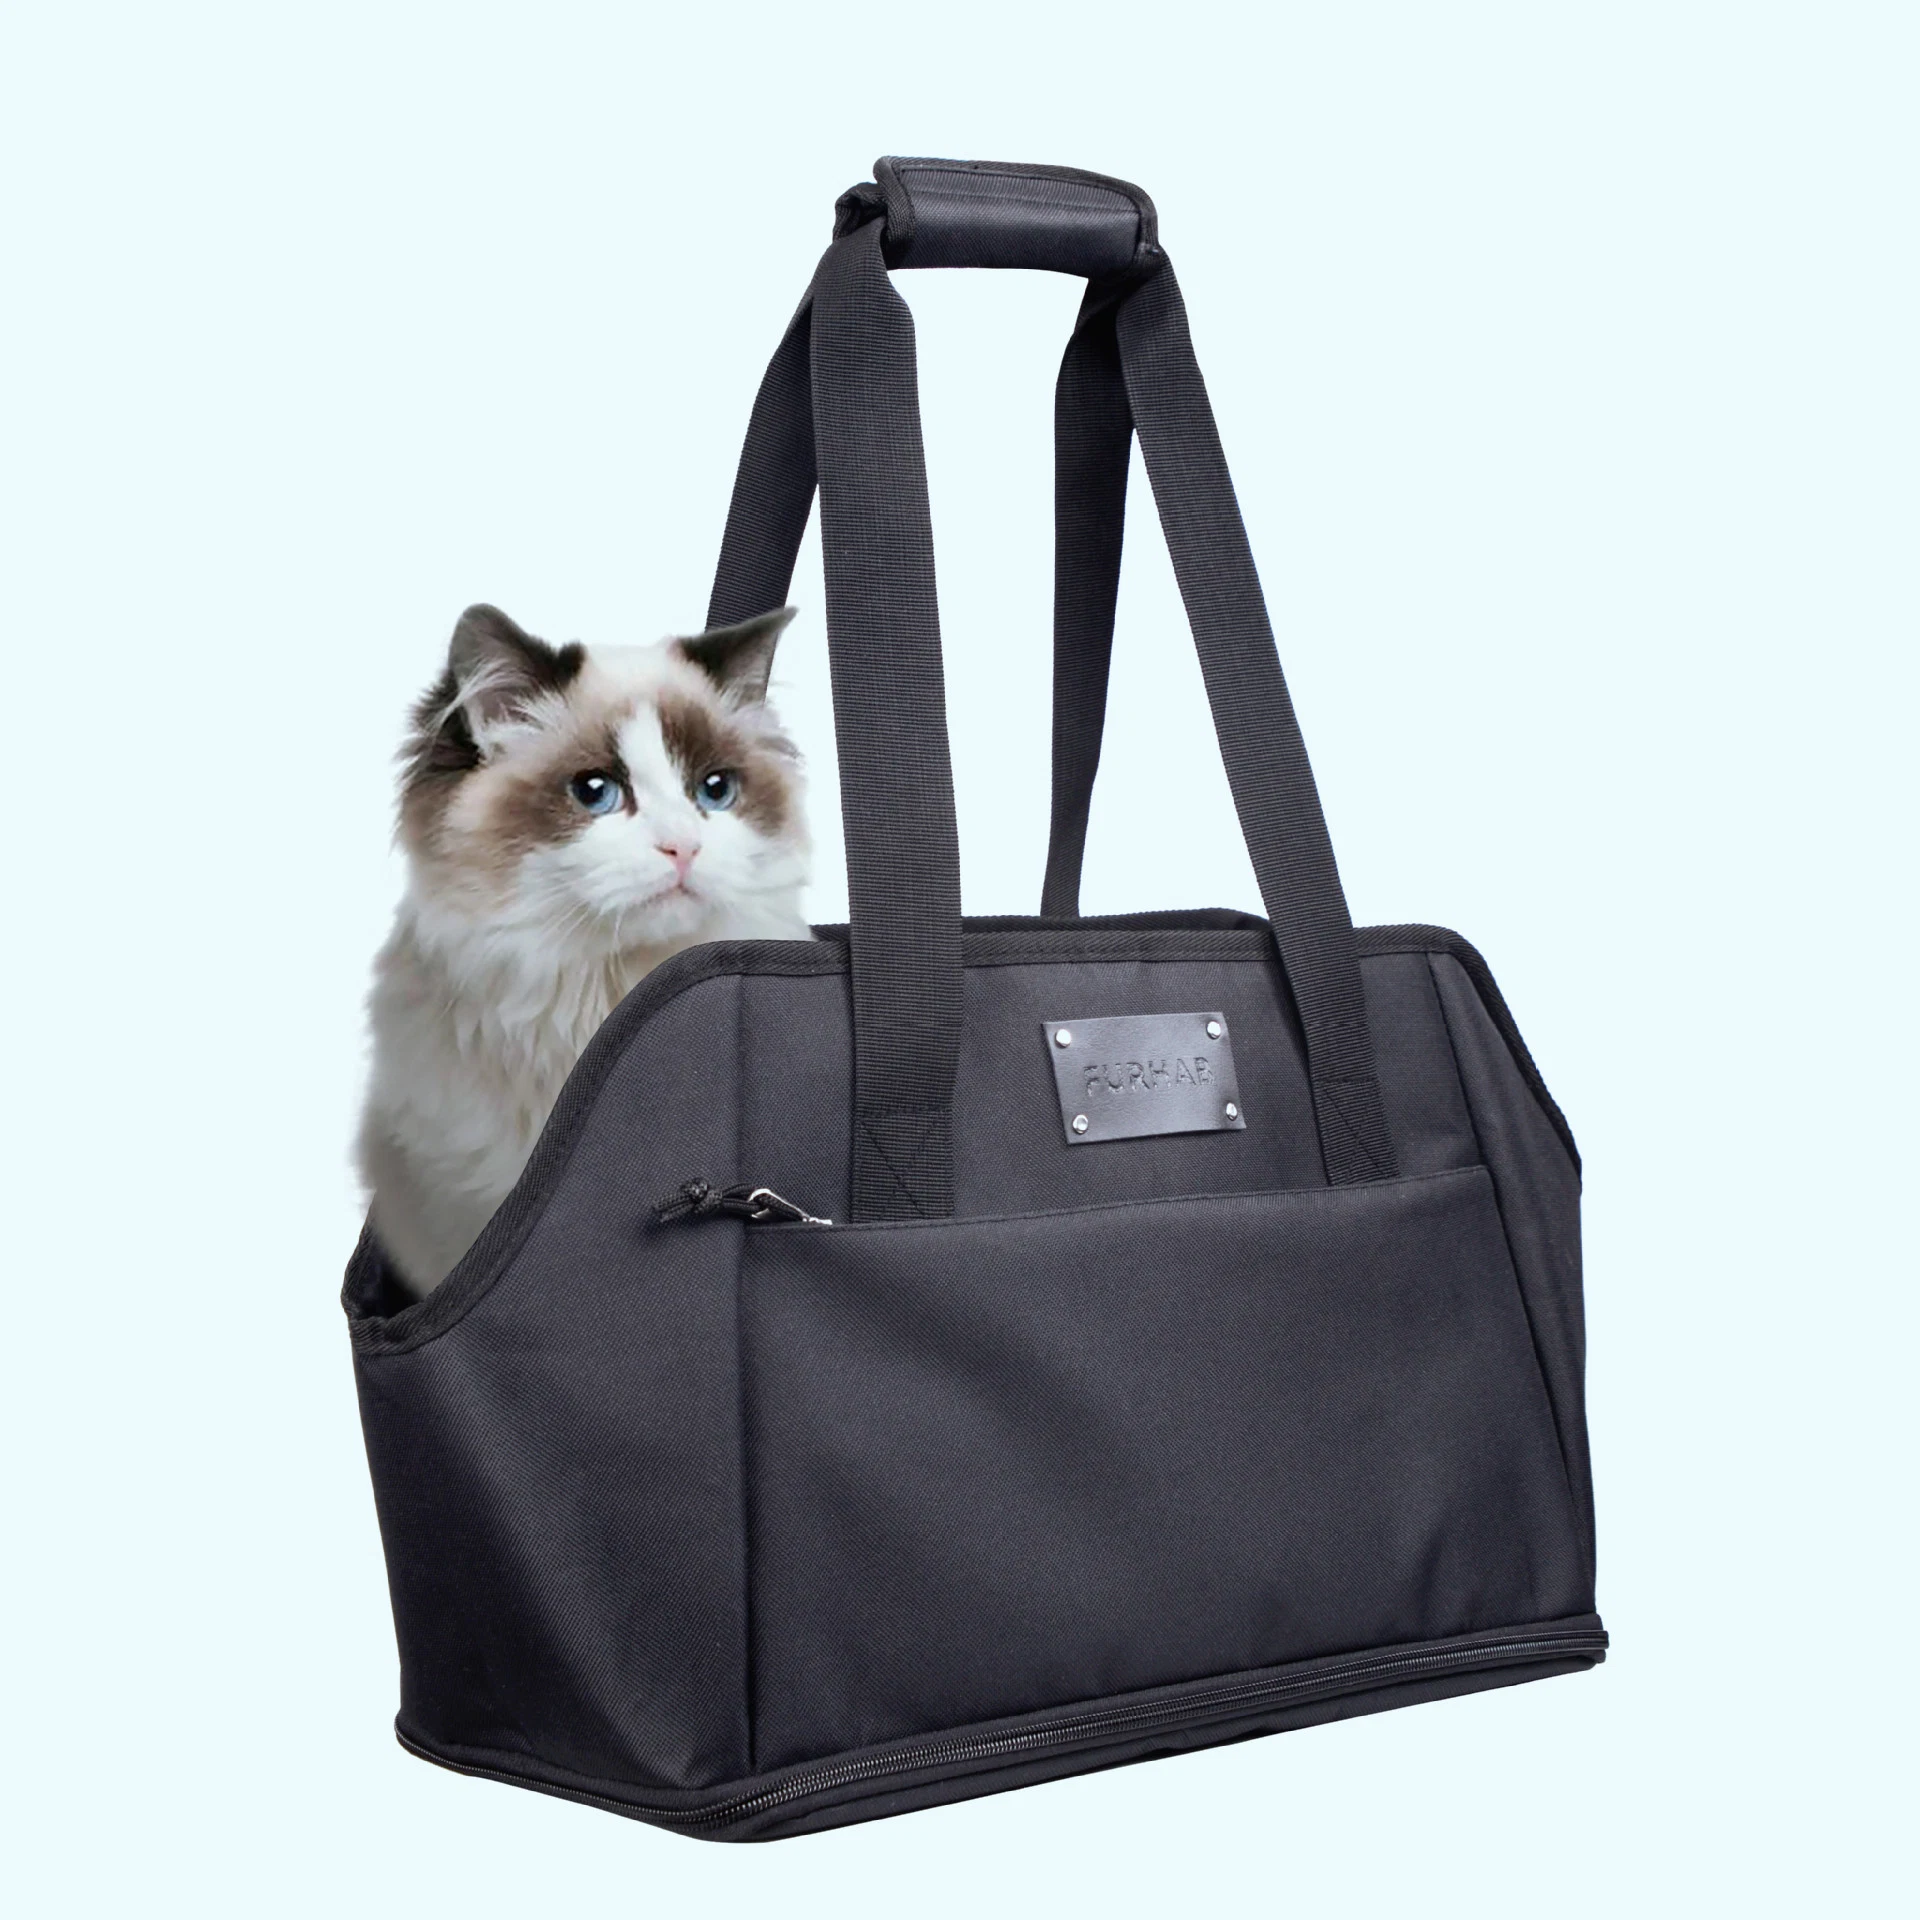 Suporte portátil Pet para viagens com animais de saco de viagem